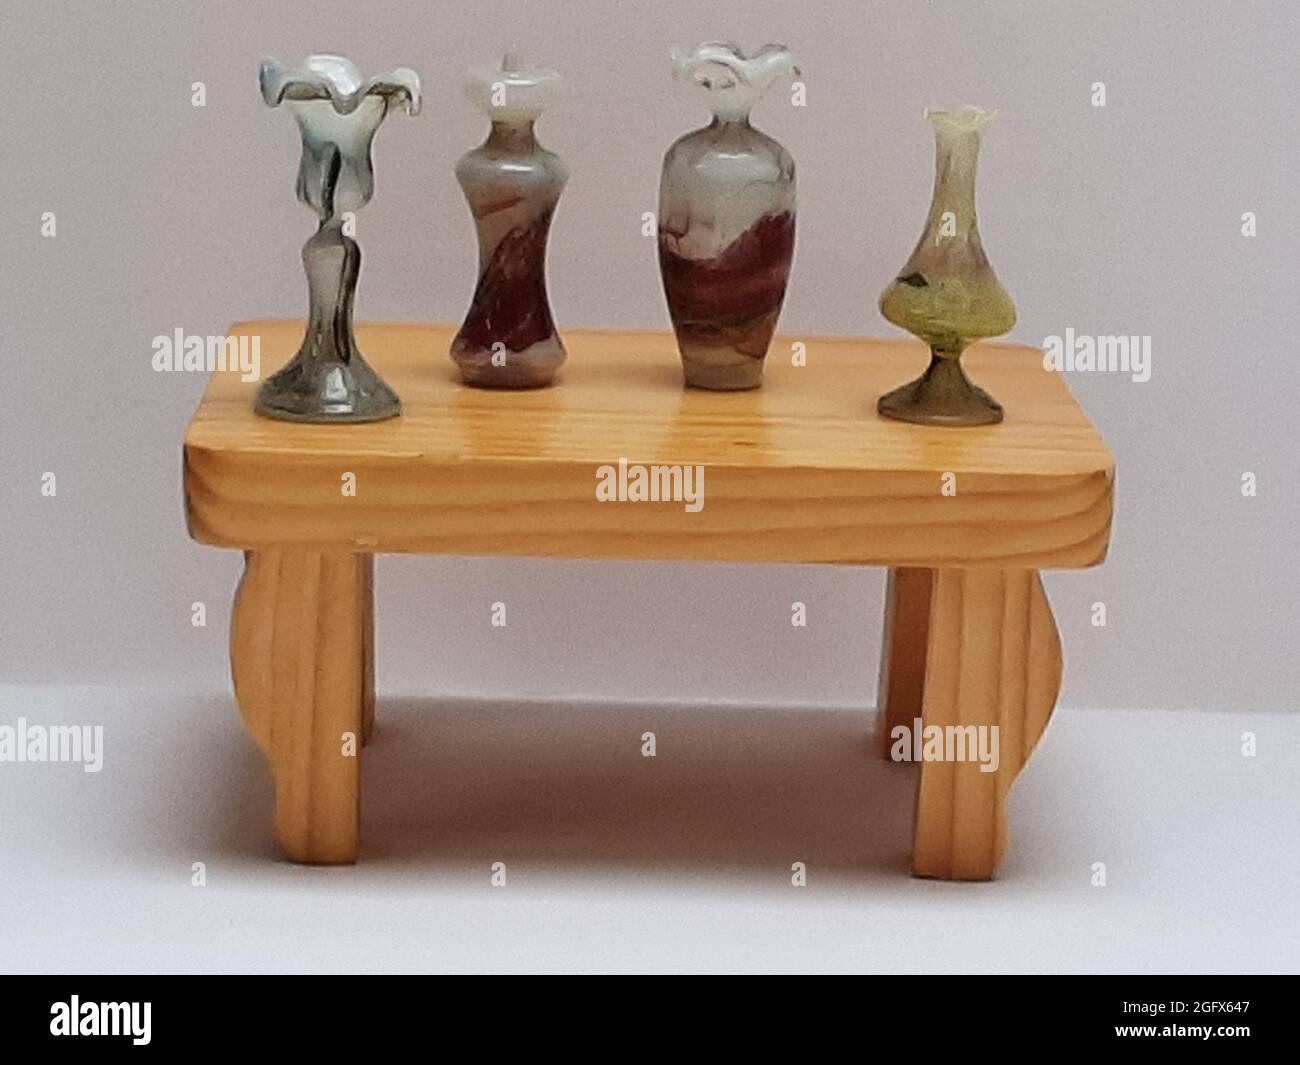 Deko Figur 4 Vasen aus Glas auf kleiner Holzbank Foto Stock